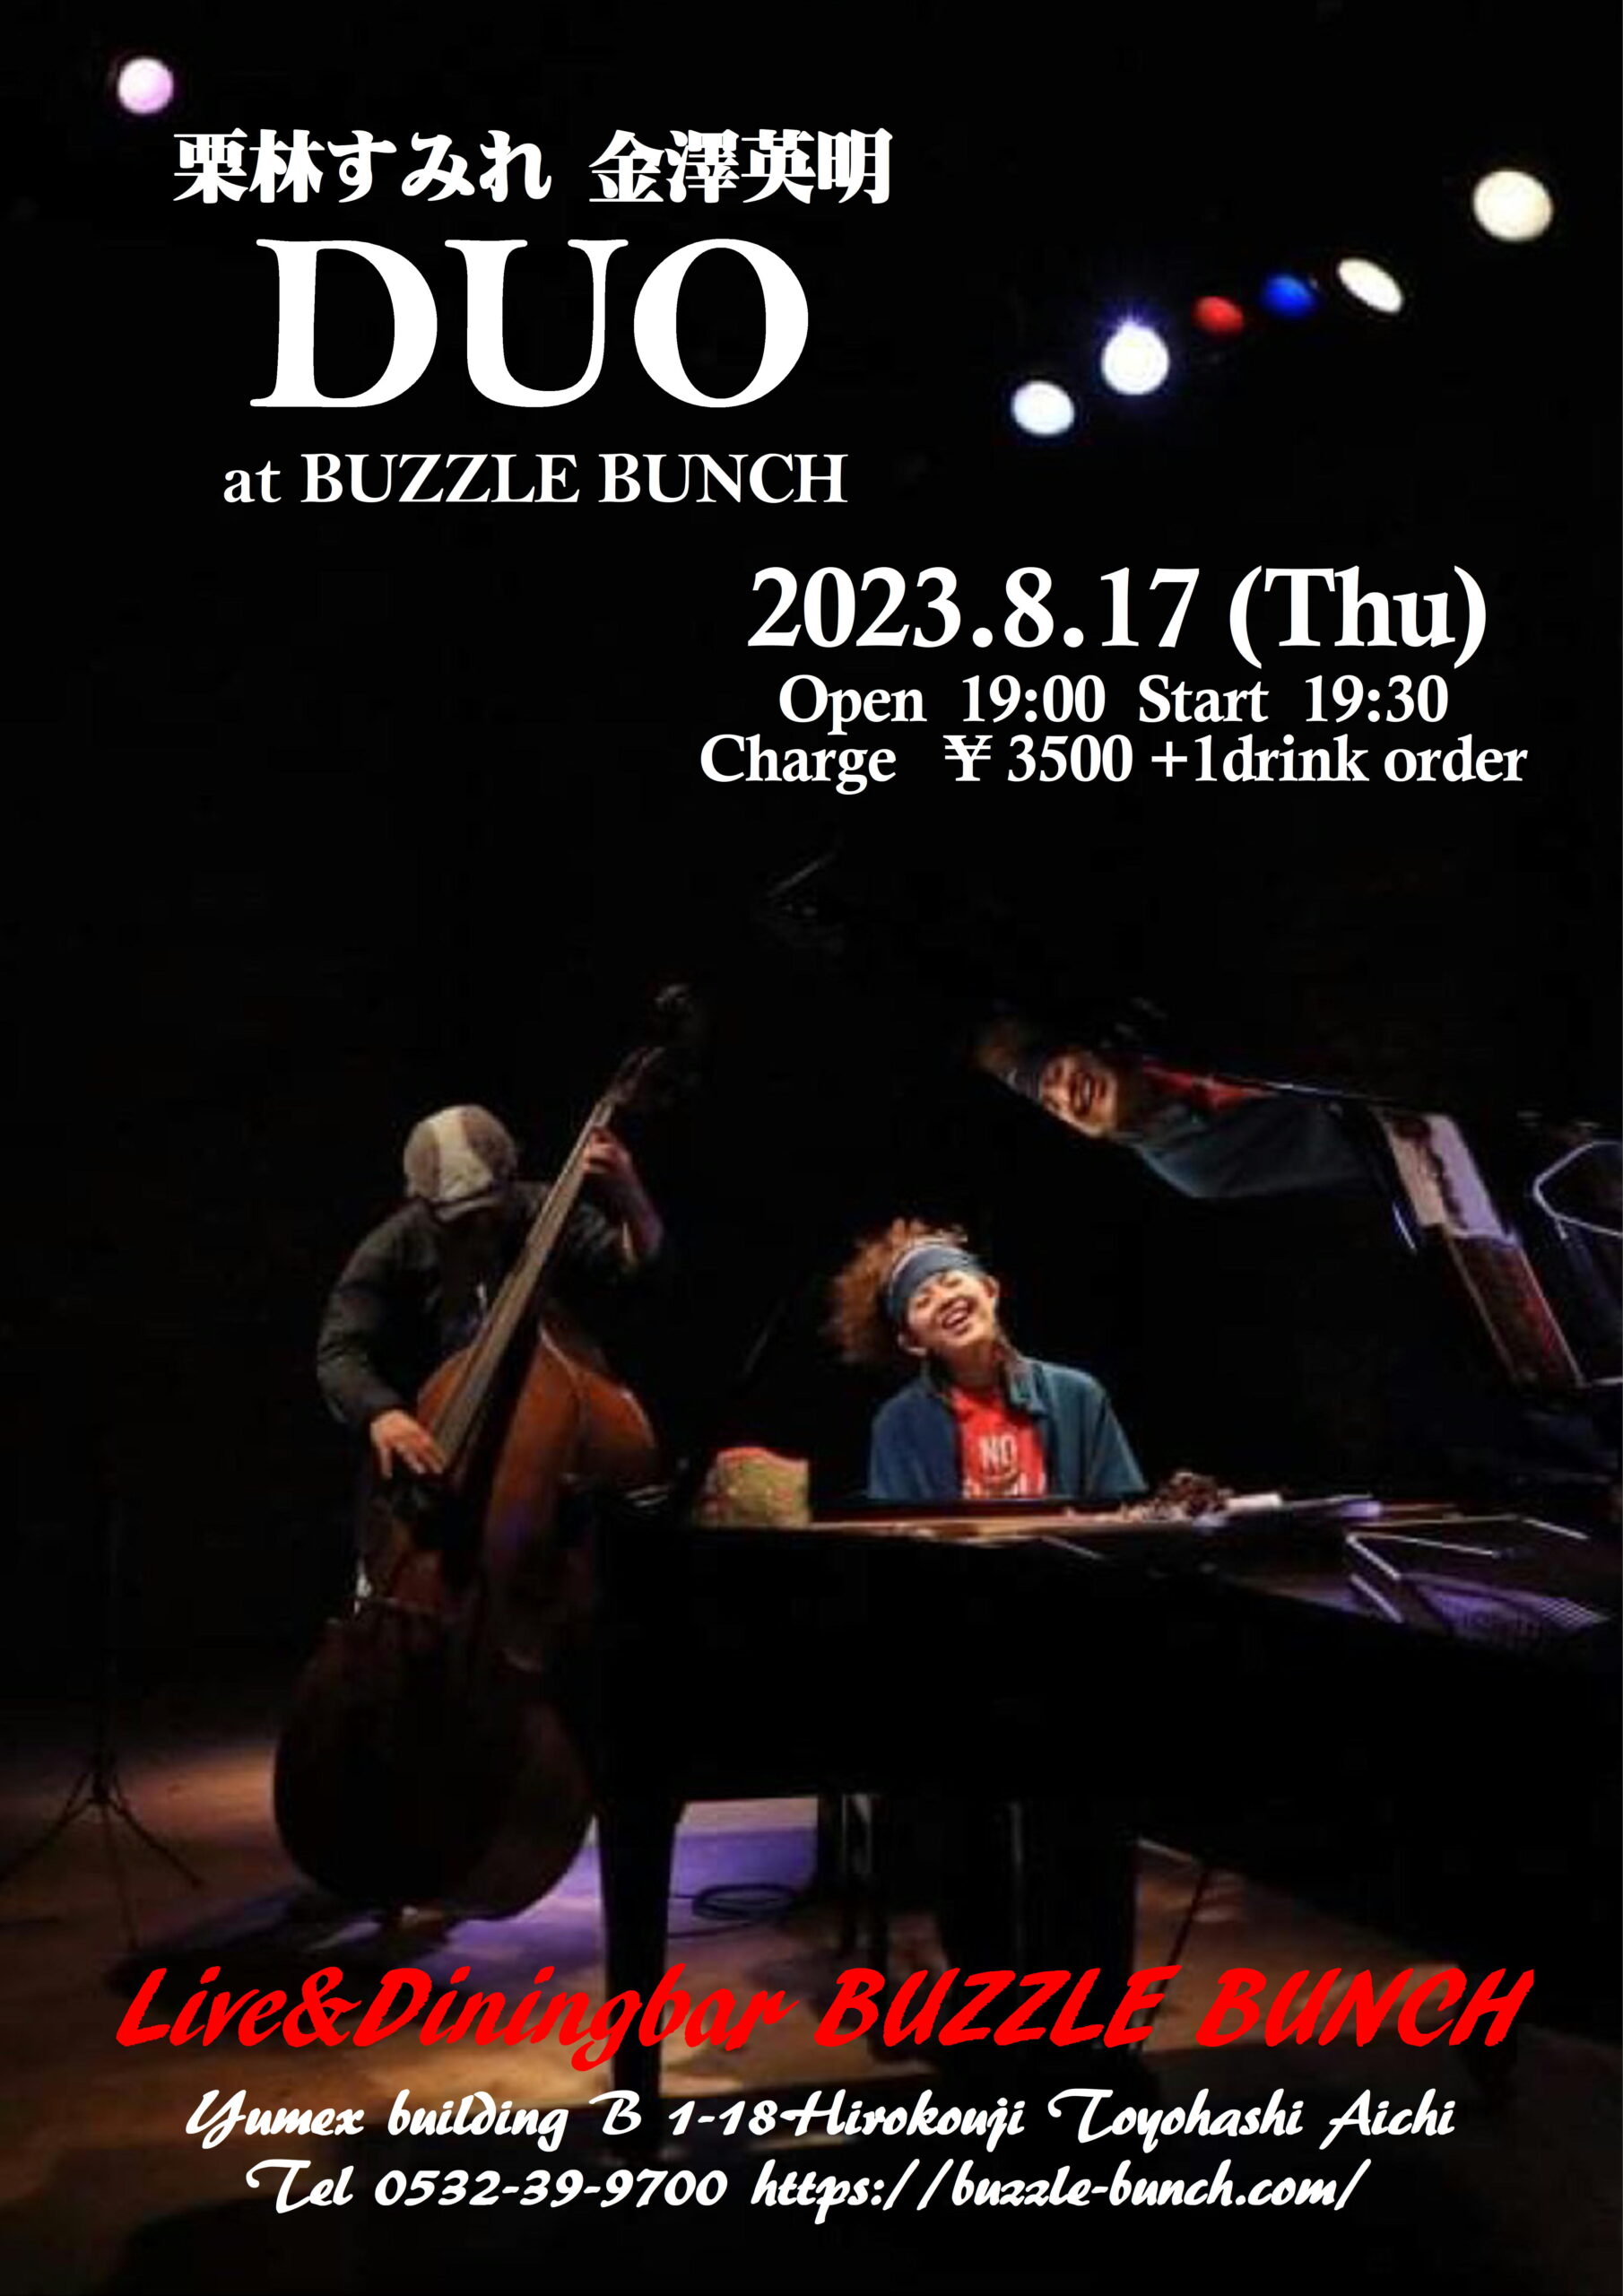 2023年8月17日(Thu) 栗林すみれ 金澤英明 DUO LIVE at BUZZLE BUNCH